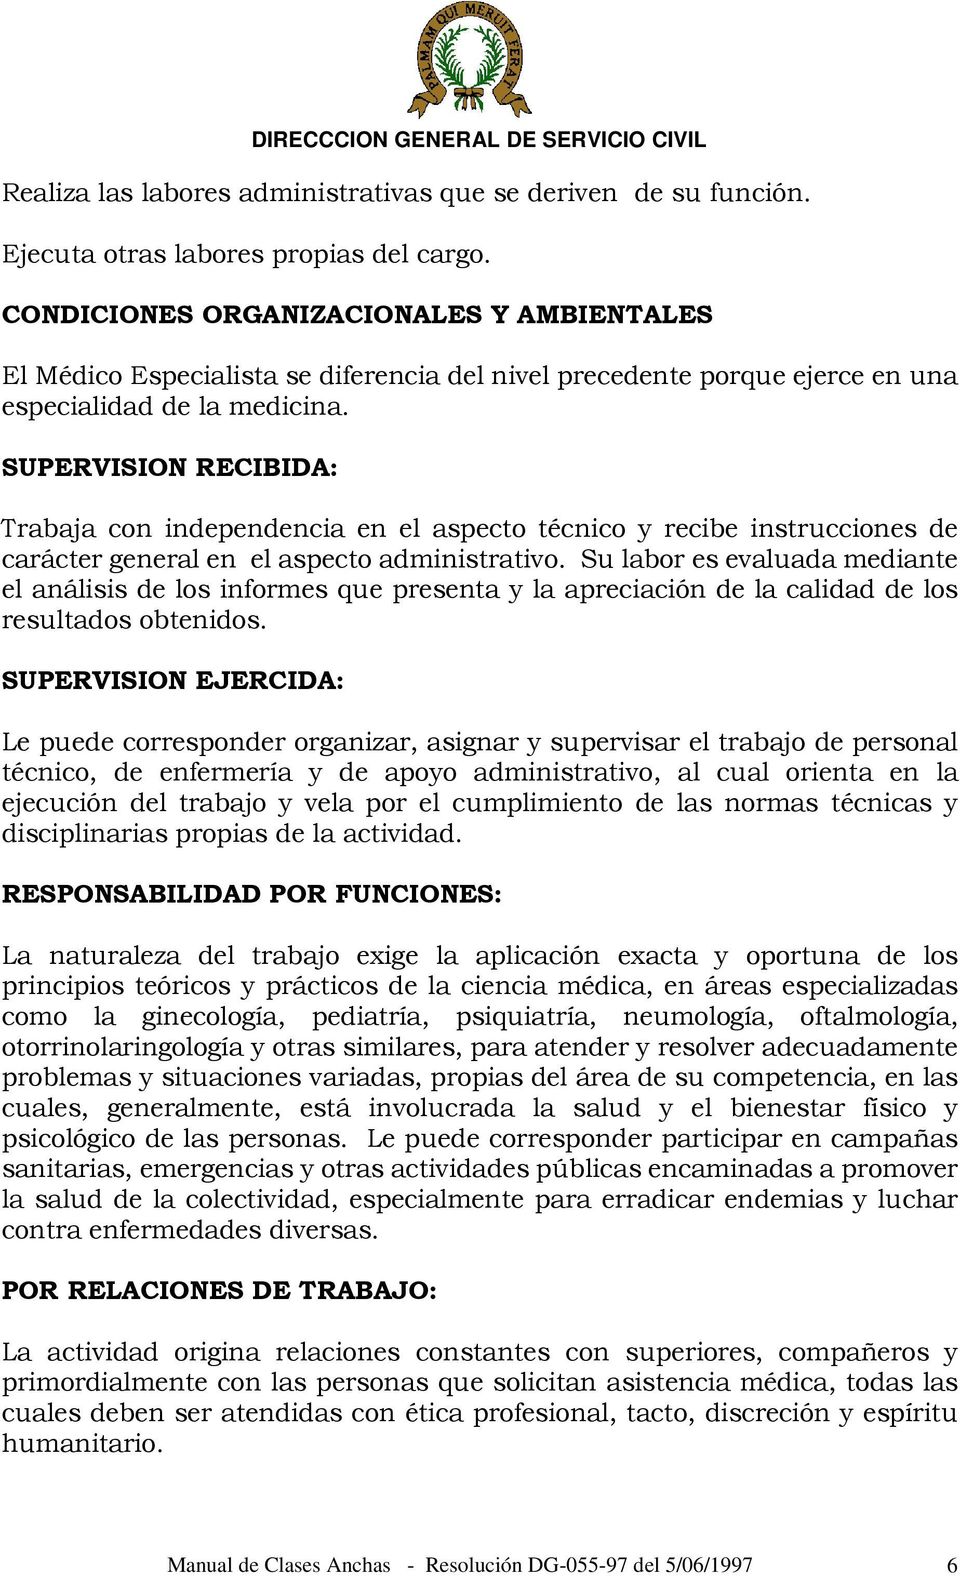 SUPERVISION RECIBIDA: Trabaja con independencia en el aspecto técnico y recibe instrucciones de carácter general en el aspecto administrativo.